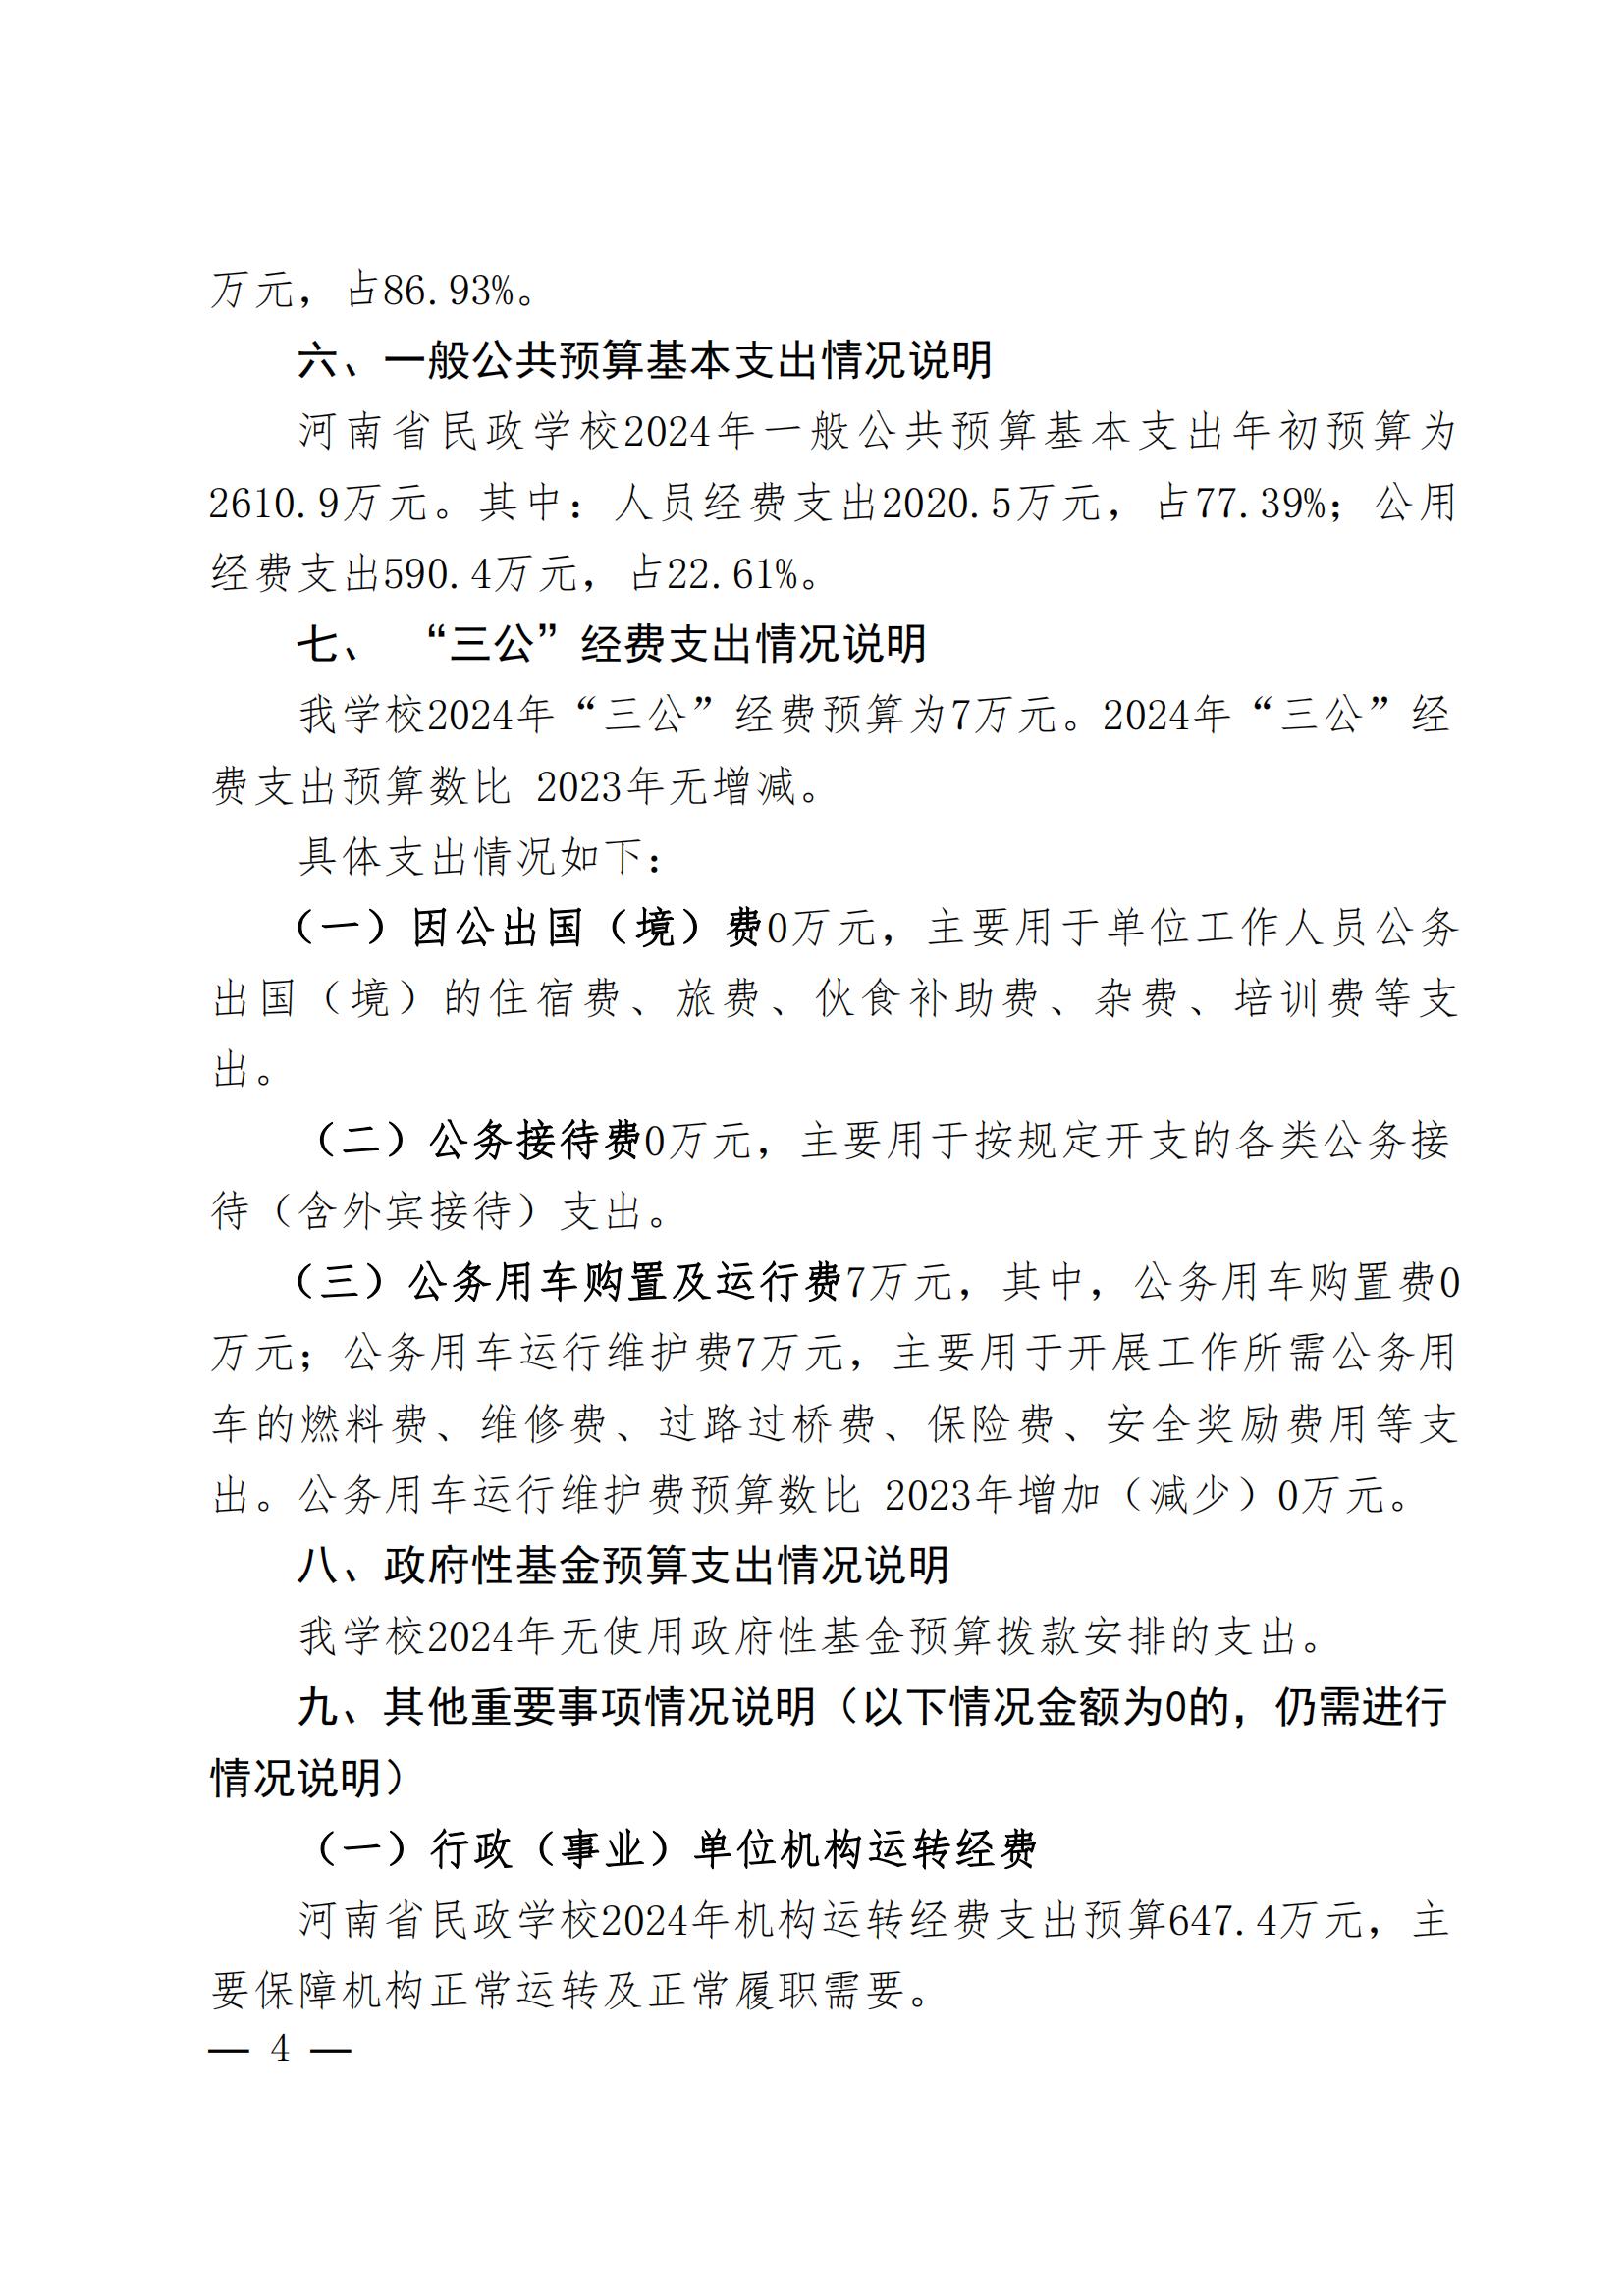 河南省民政学校2024年部门预算公开(1)_03.jpg